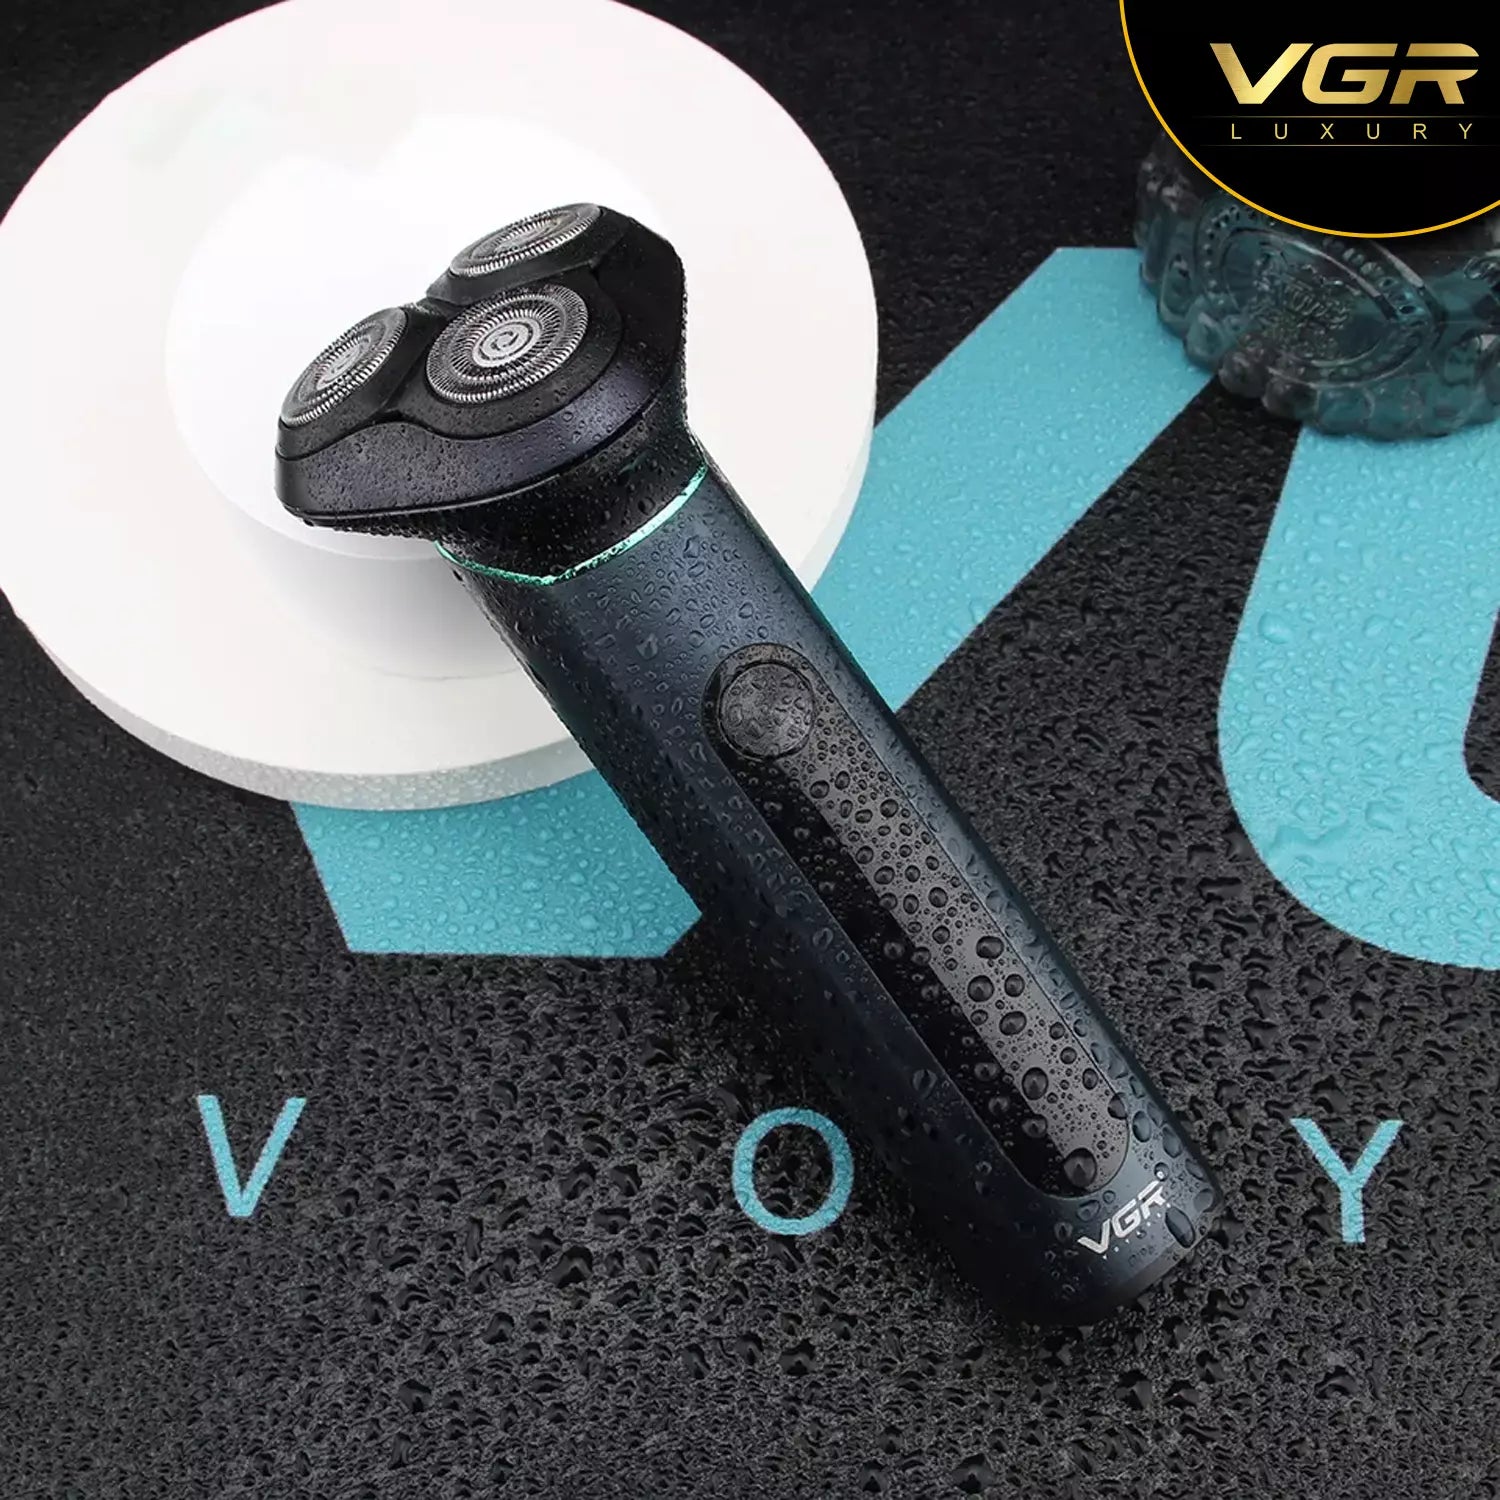 VGR V-310 Waterproof Beard Shaver For Men, Black